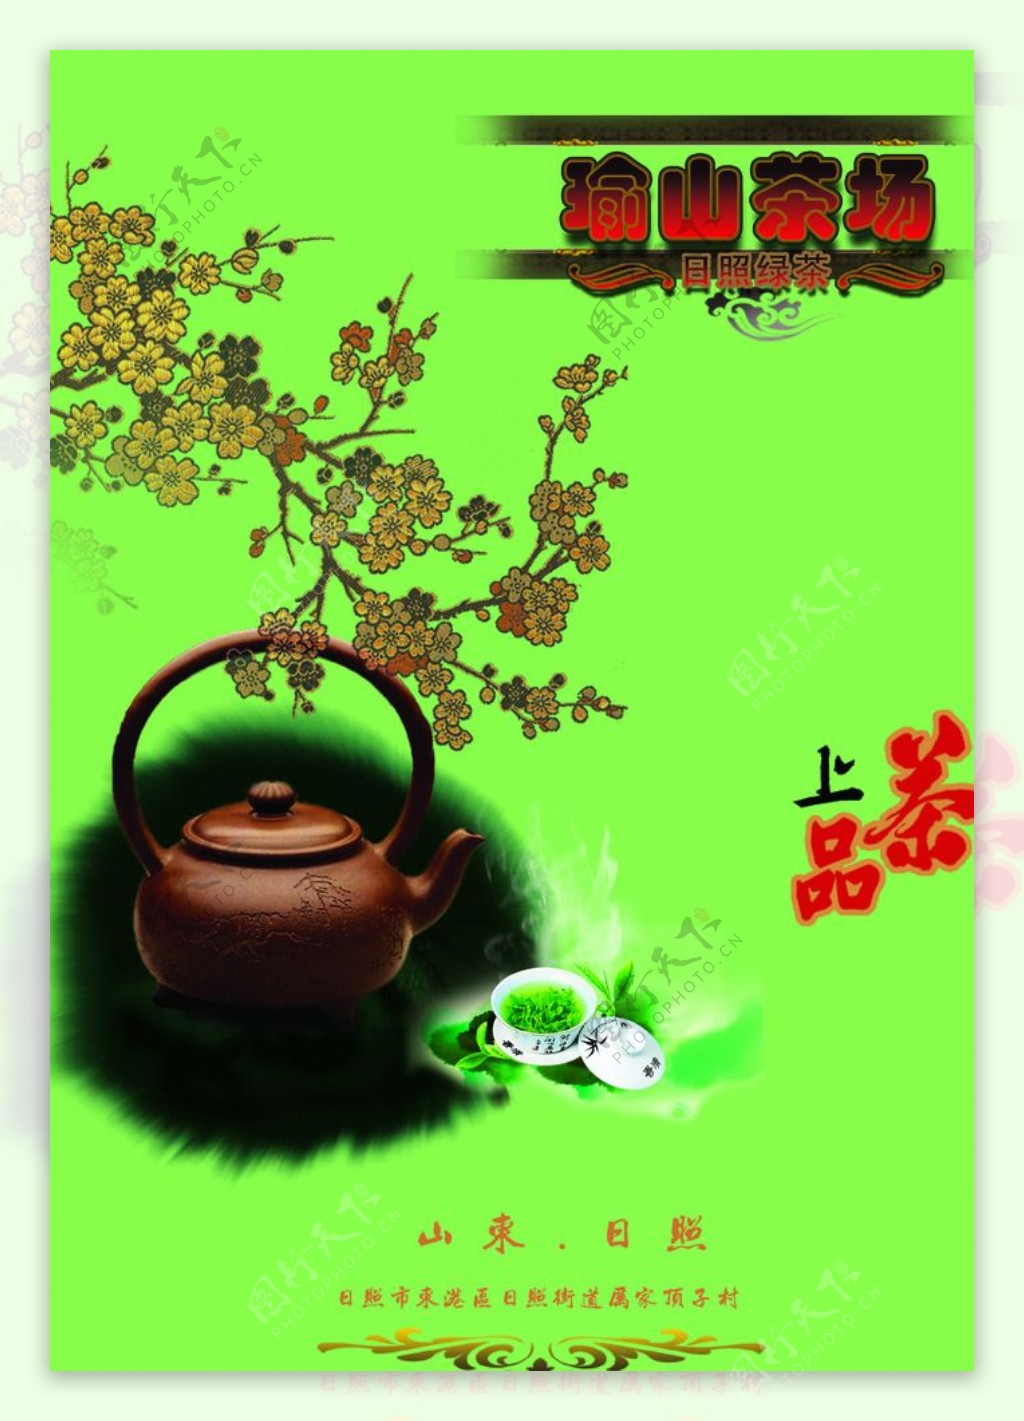 茶场绿茶广告版面图片